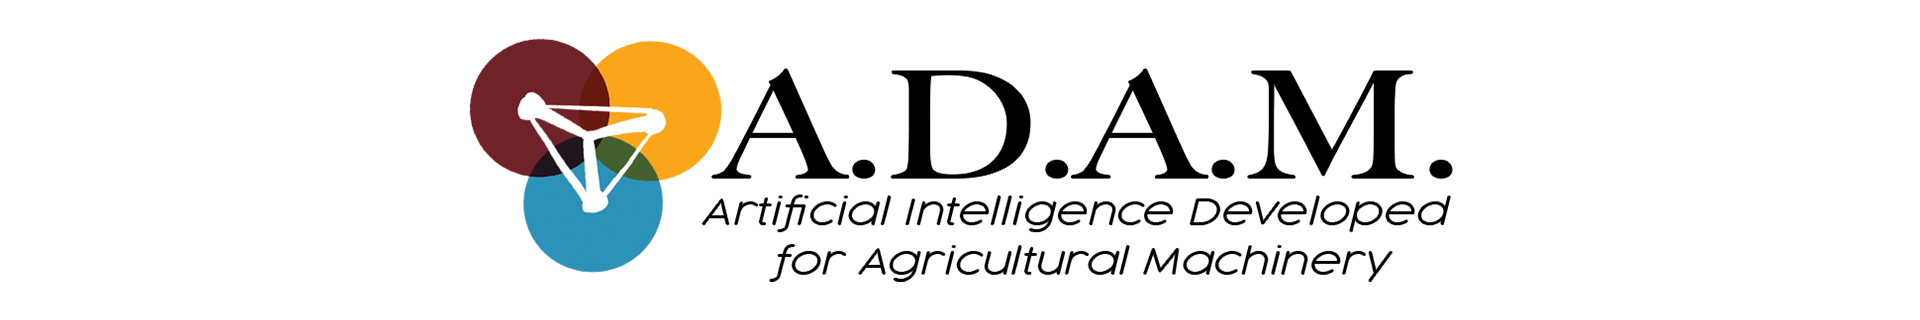 ADAM logo 1920x320